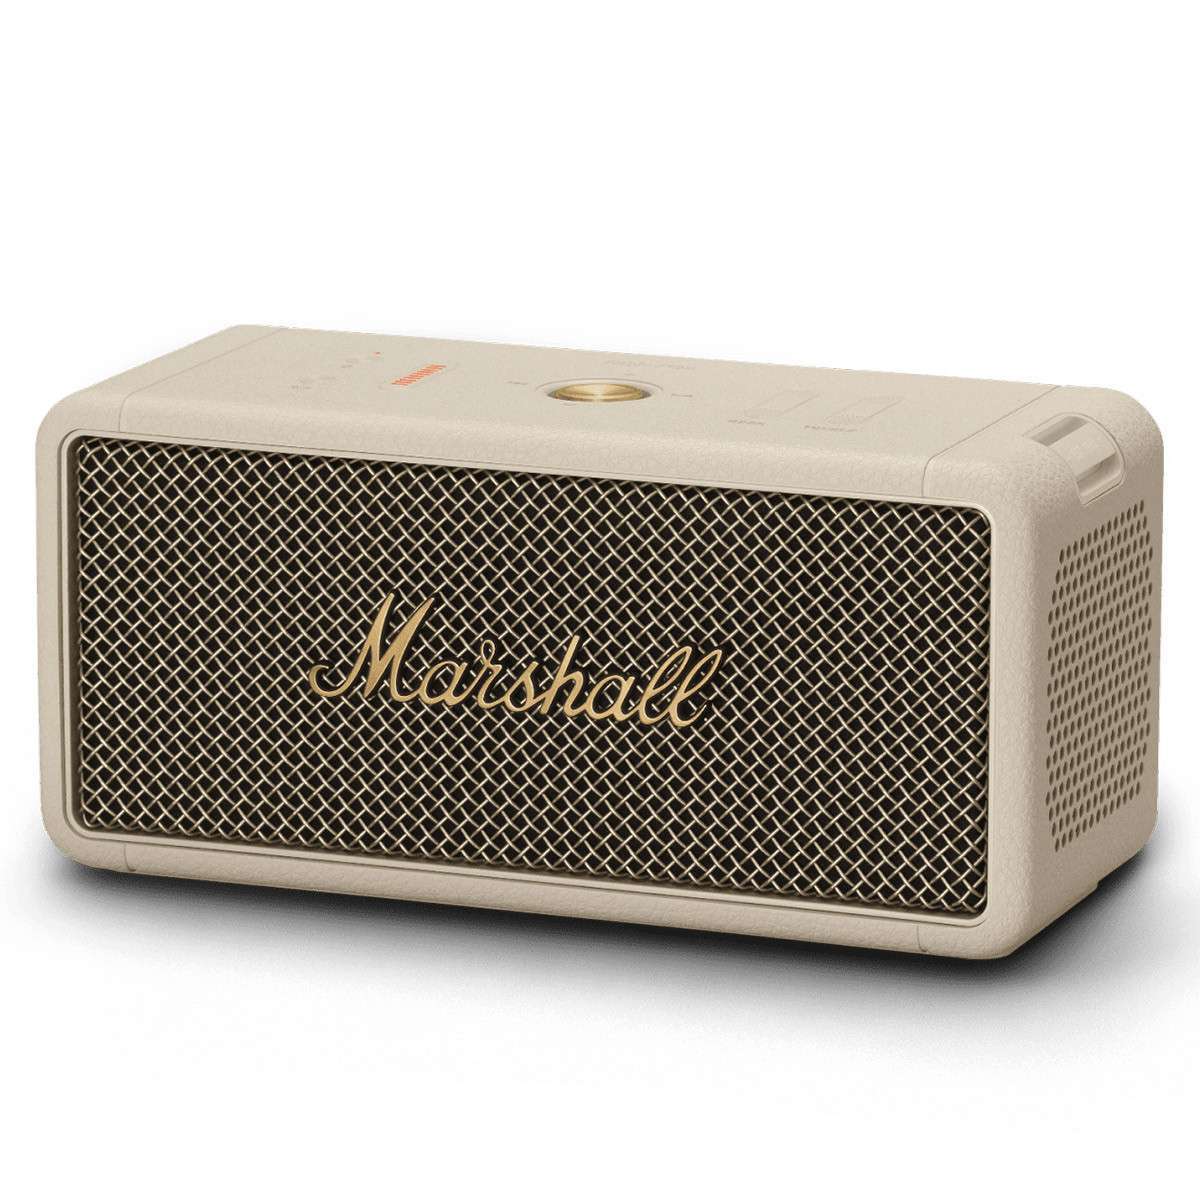 Loa Bluetooth Marshall Middleton Portable - Hàng Nhập Khẩu